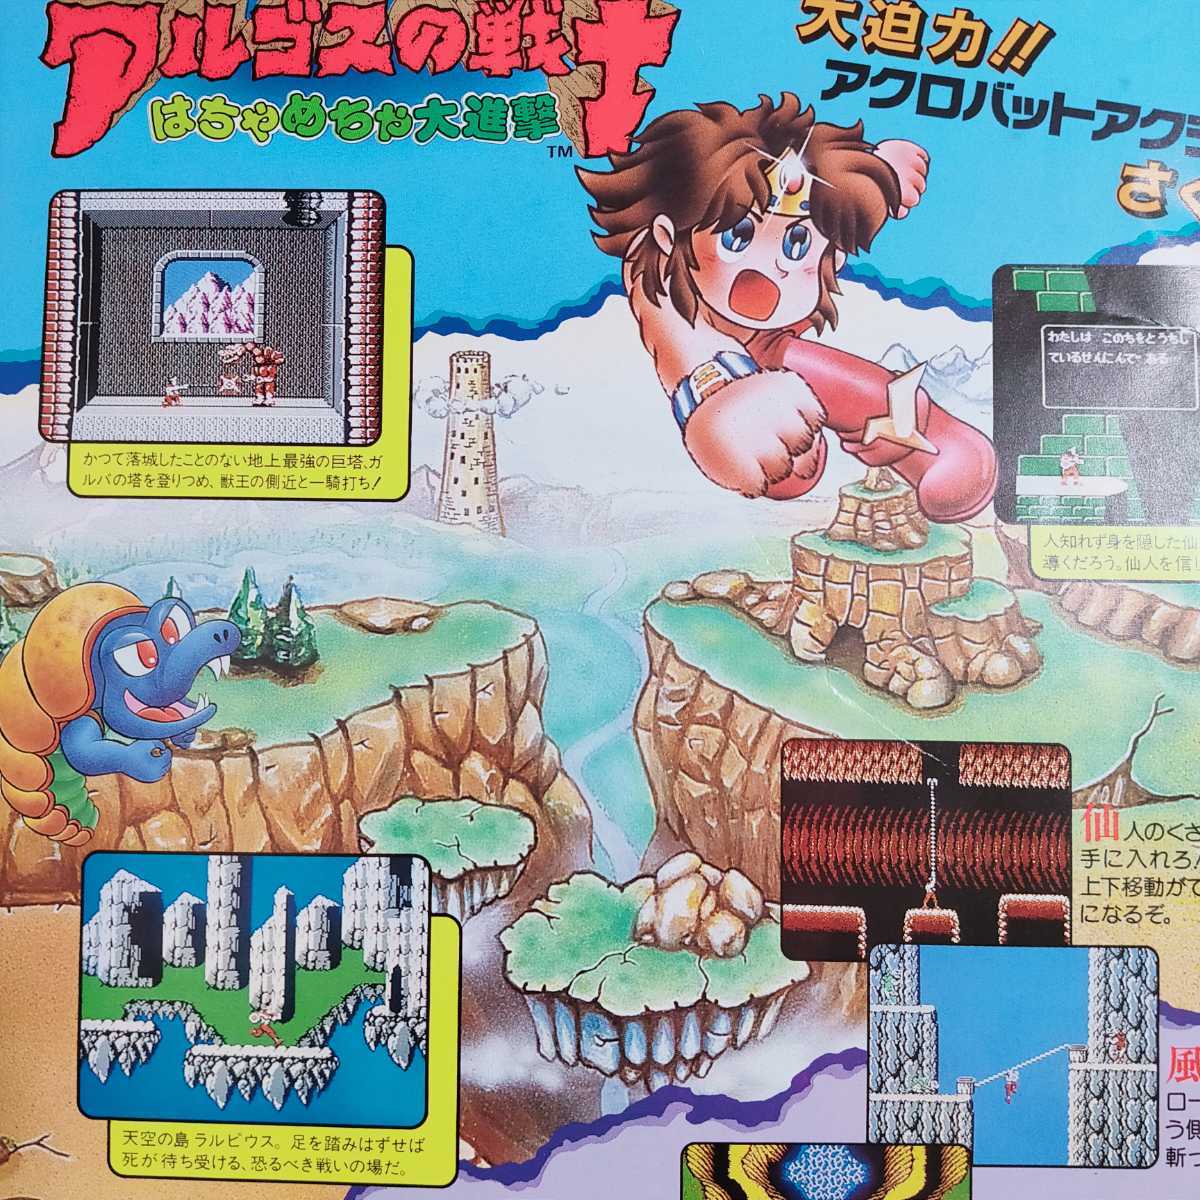  быстрое решение! бесплатная доставка очень редкий! рекламная листовка FC Famicom aru Goss. воитель tech moTECMO SOFT